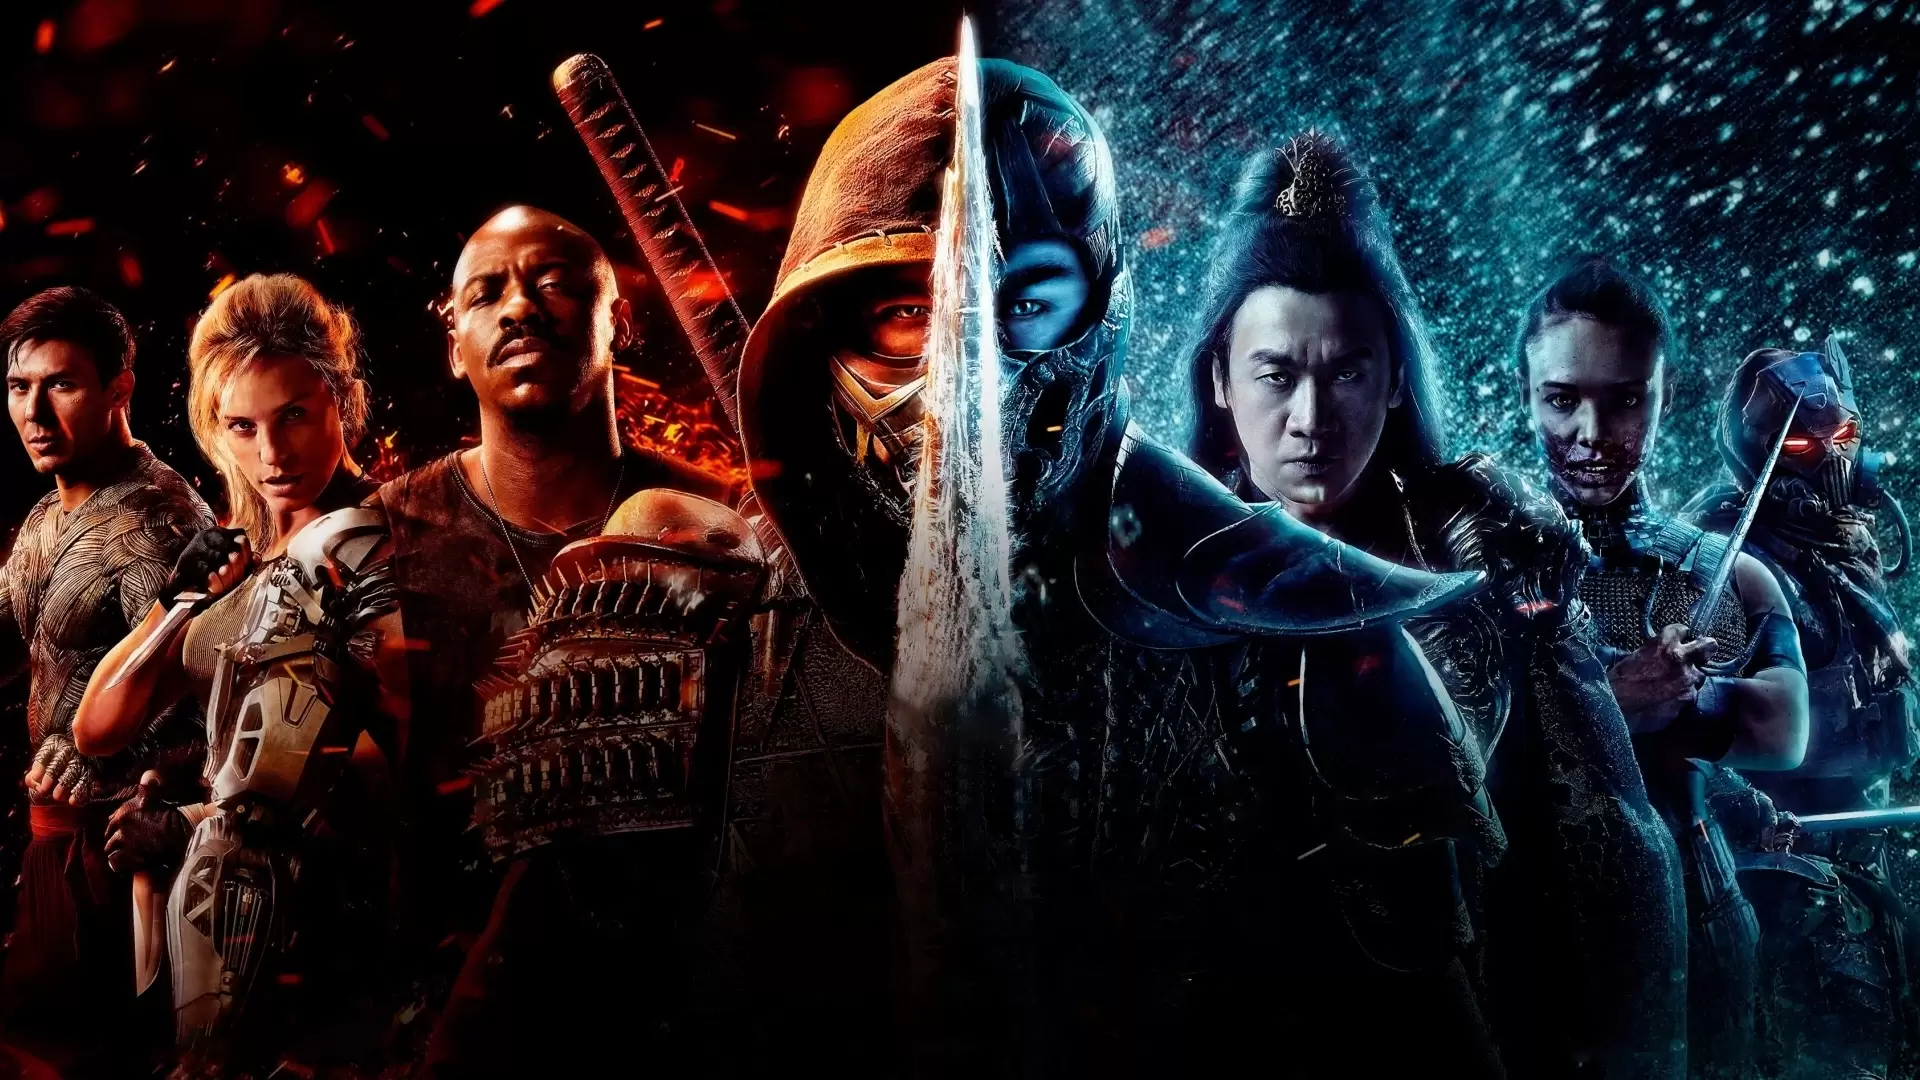 دانلود فیلم Mortal Kombat 2021 (مورتال کامبت) با زیرنویس فارسی و تماشای آنلاین